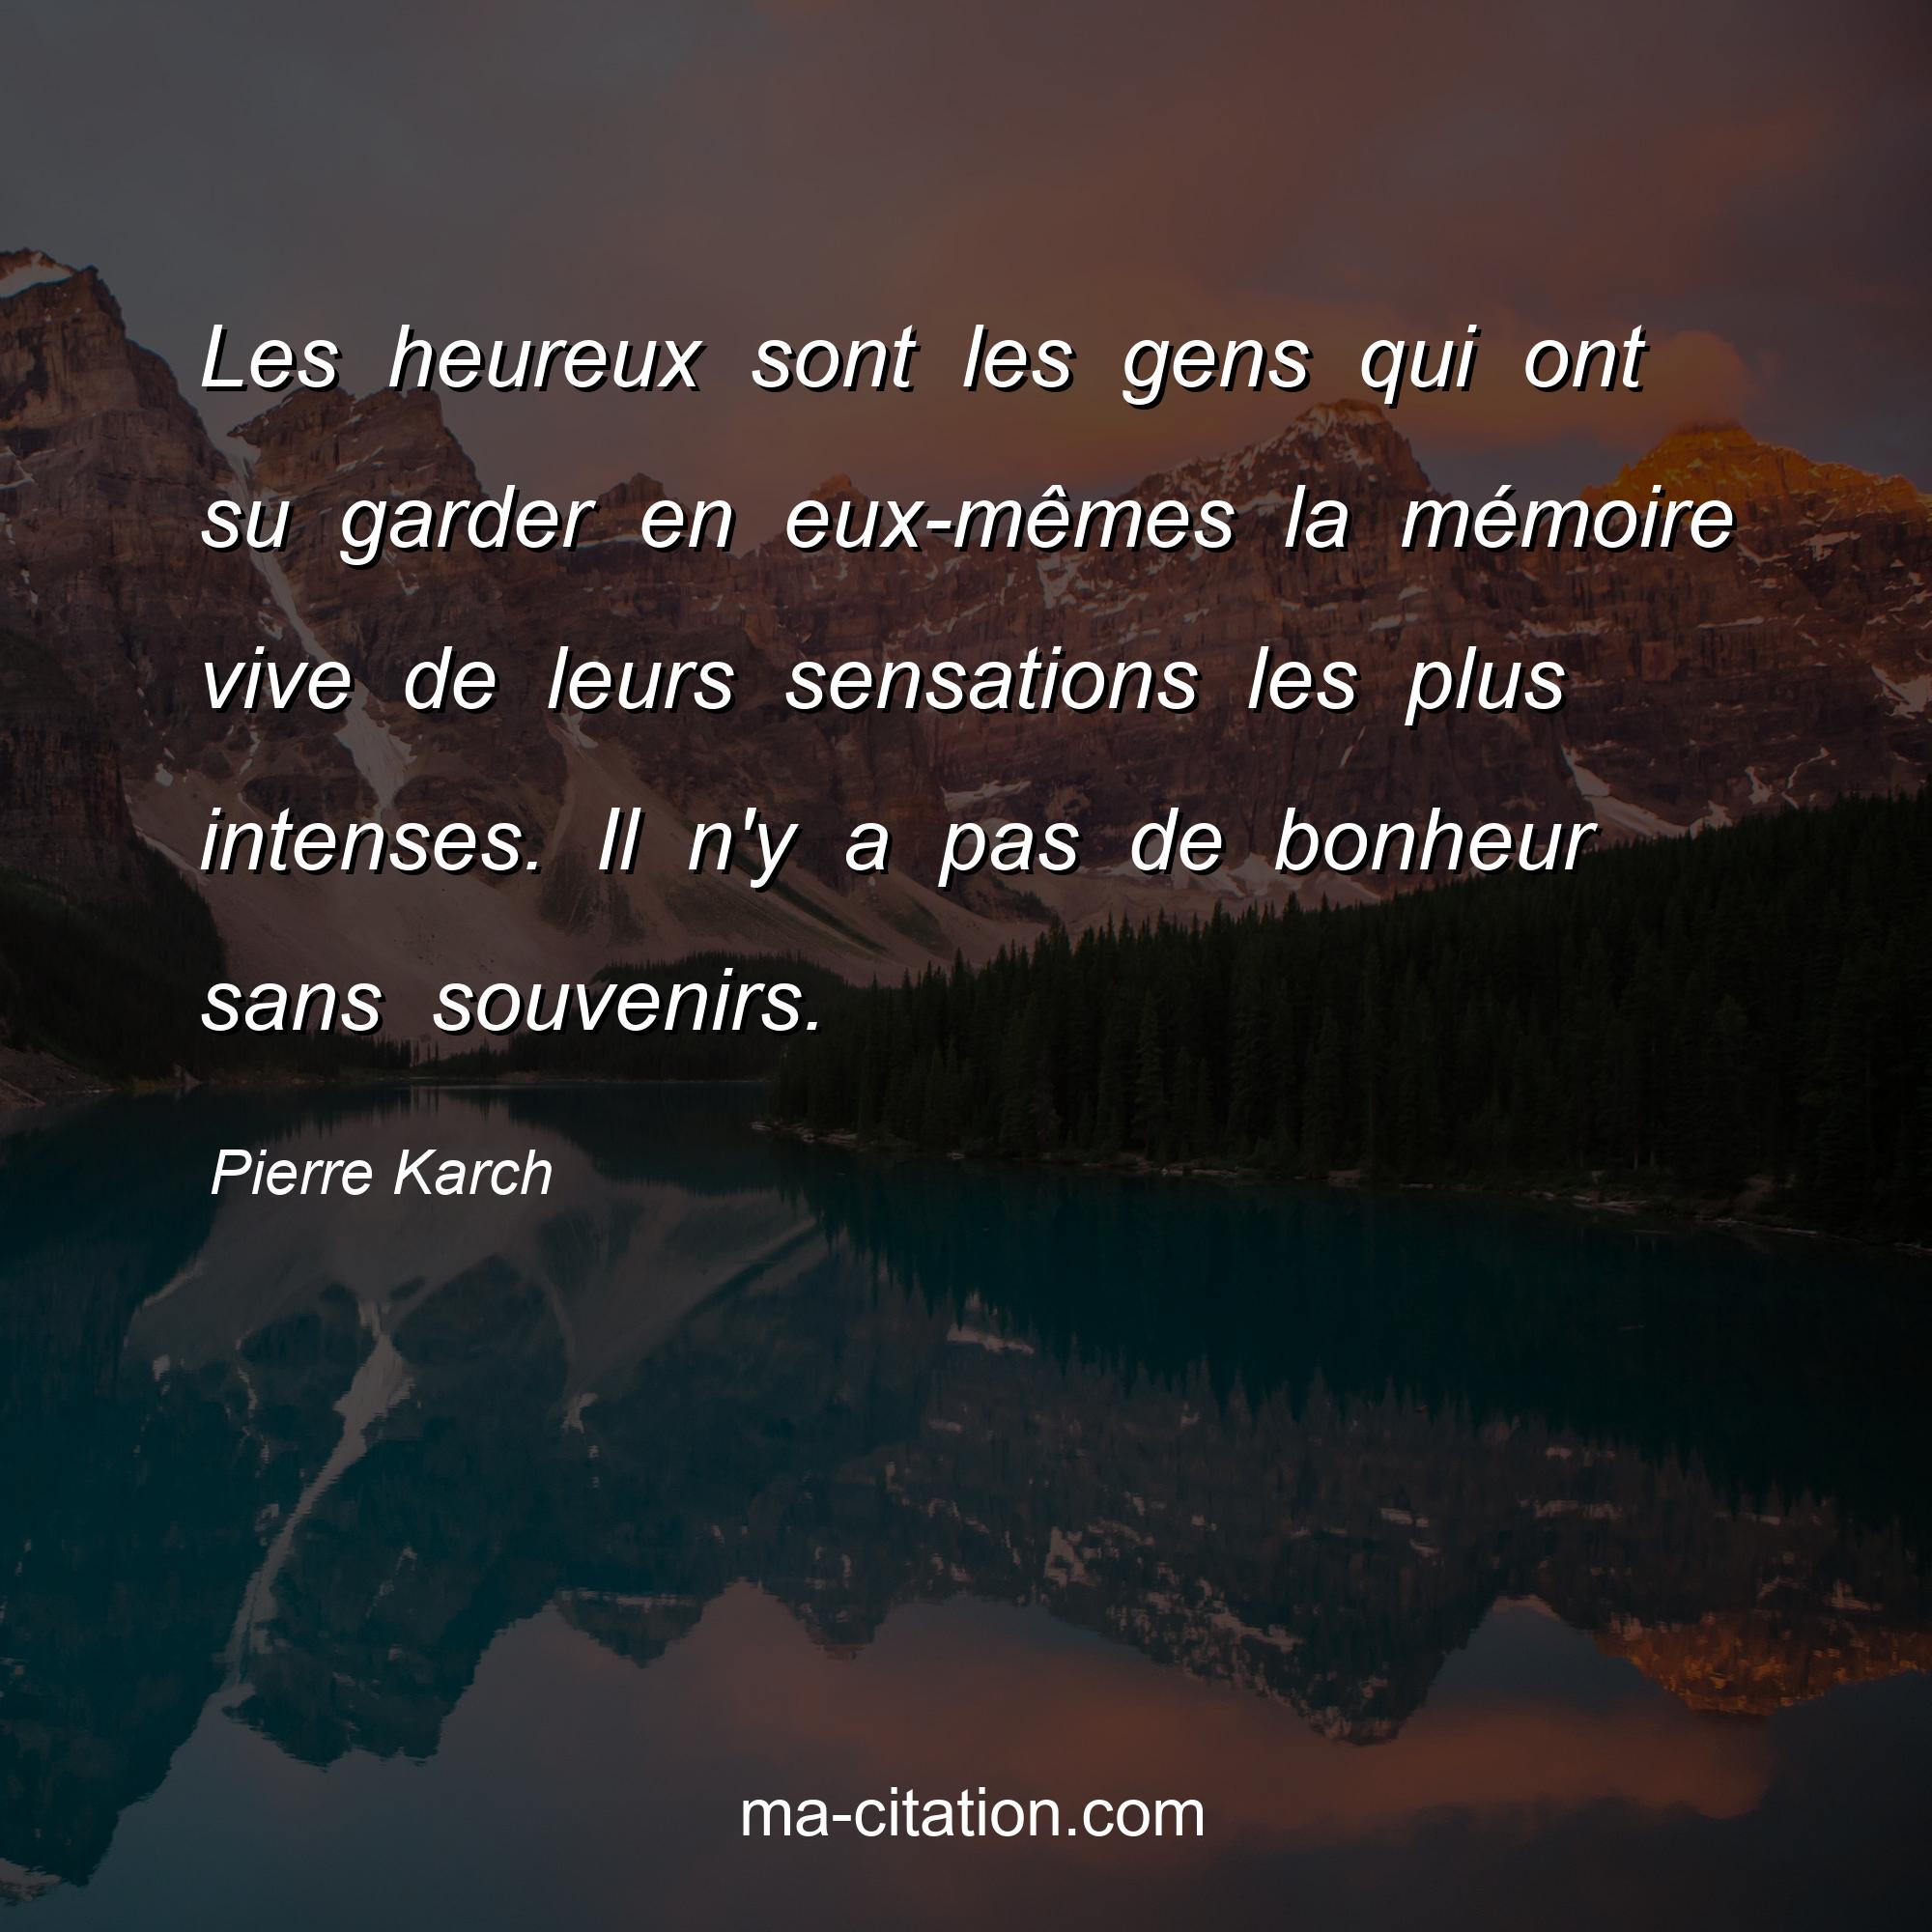 Pierre Karch : Les heureux sont les gens qui ont su garder en eux-mêmes la mémoire vive de leurs sensations les plus intenses. Il n'y a pas de bonheur sans souvenirs.